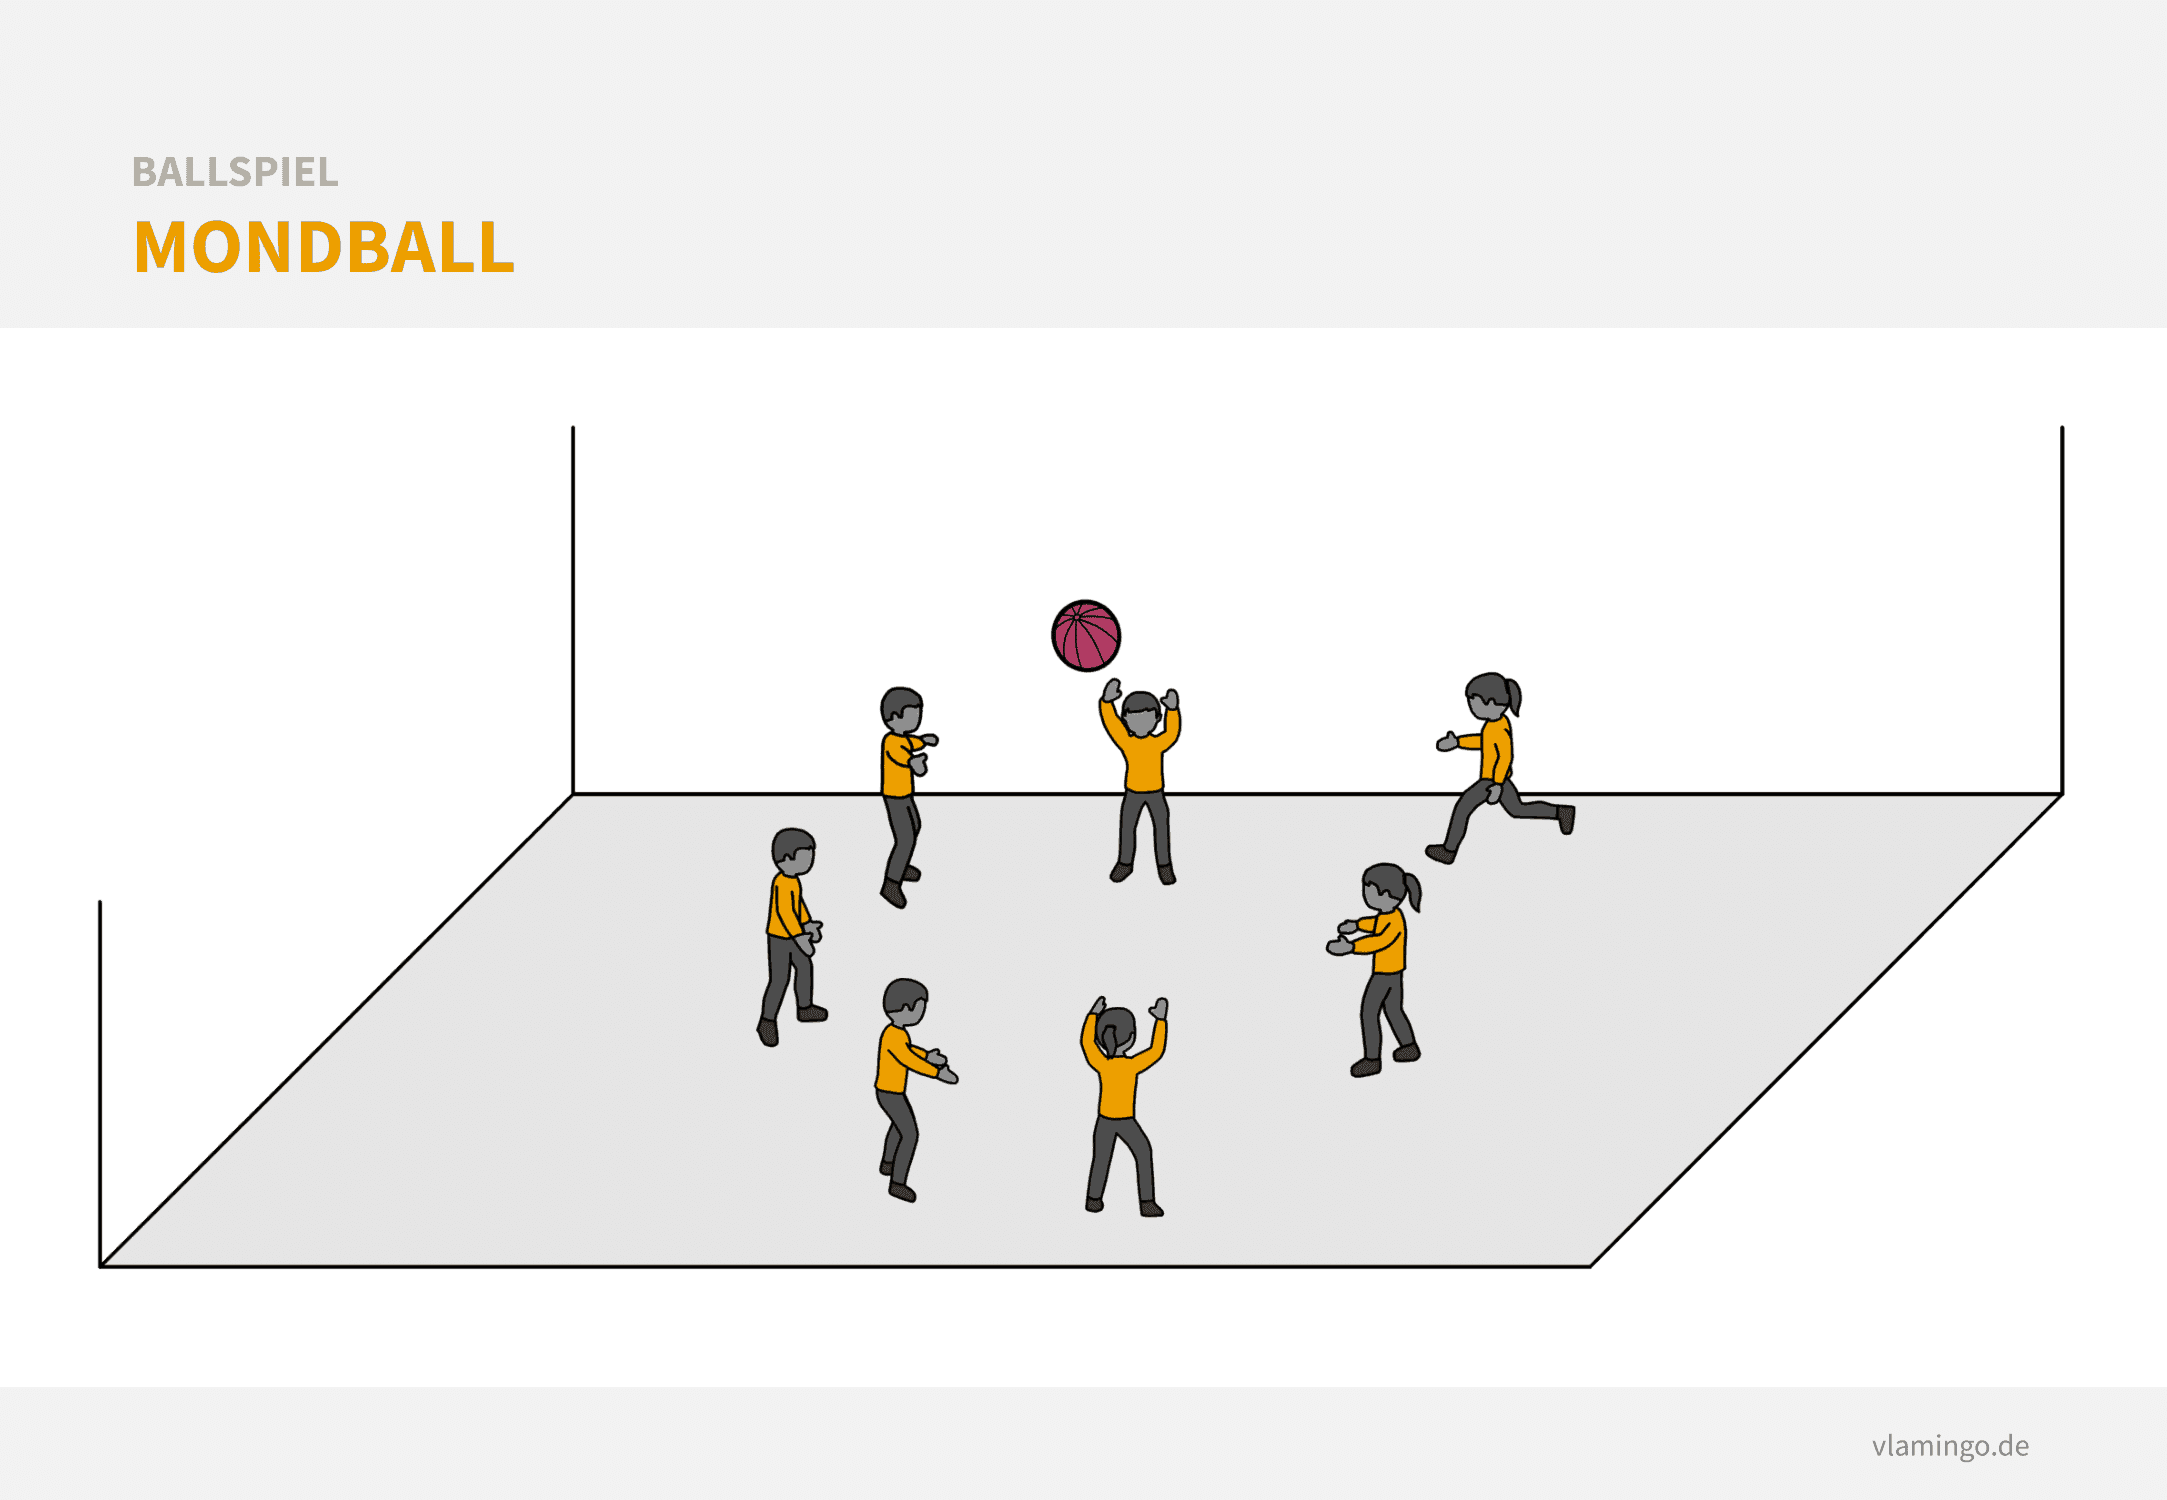 Ballspiel: Mondball